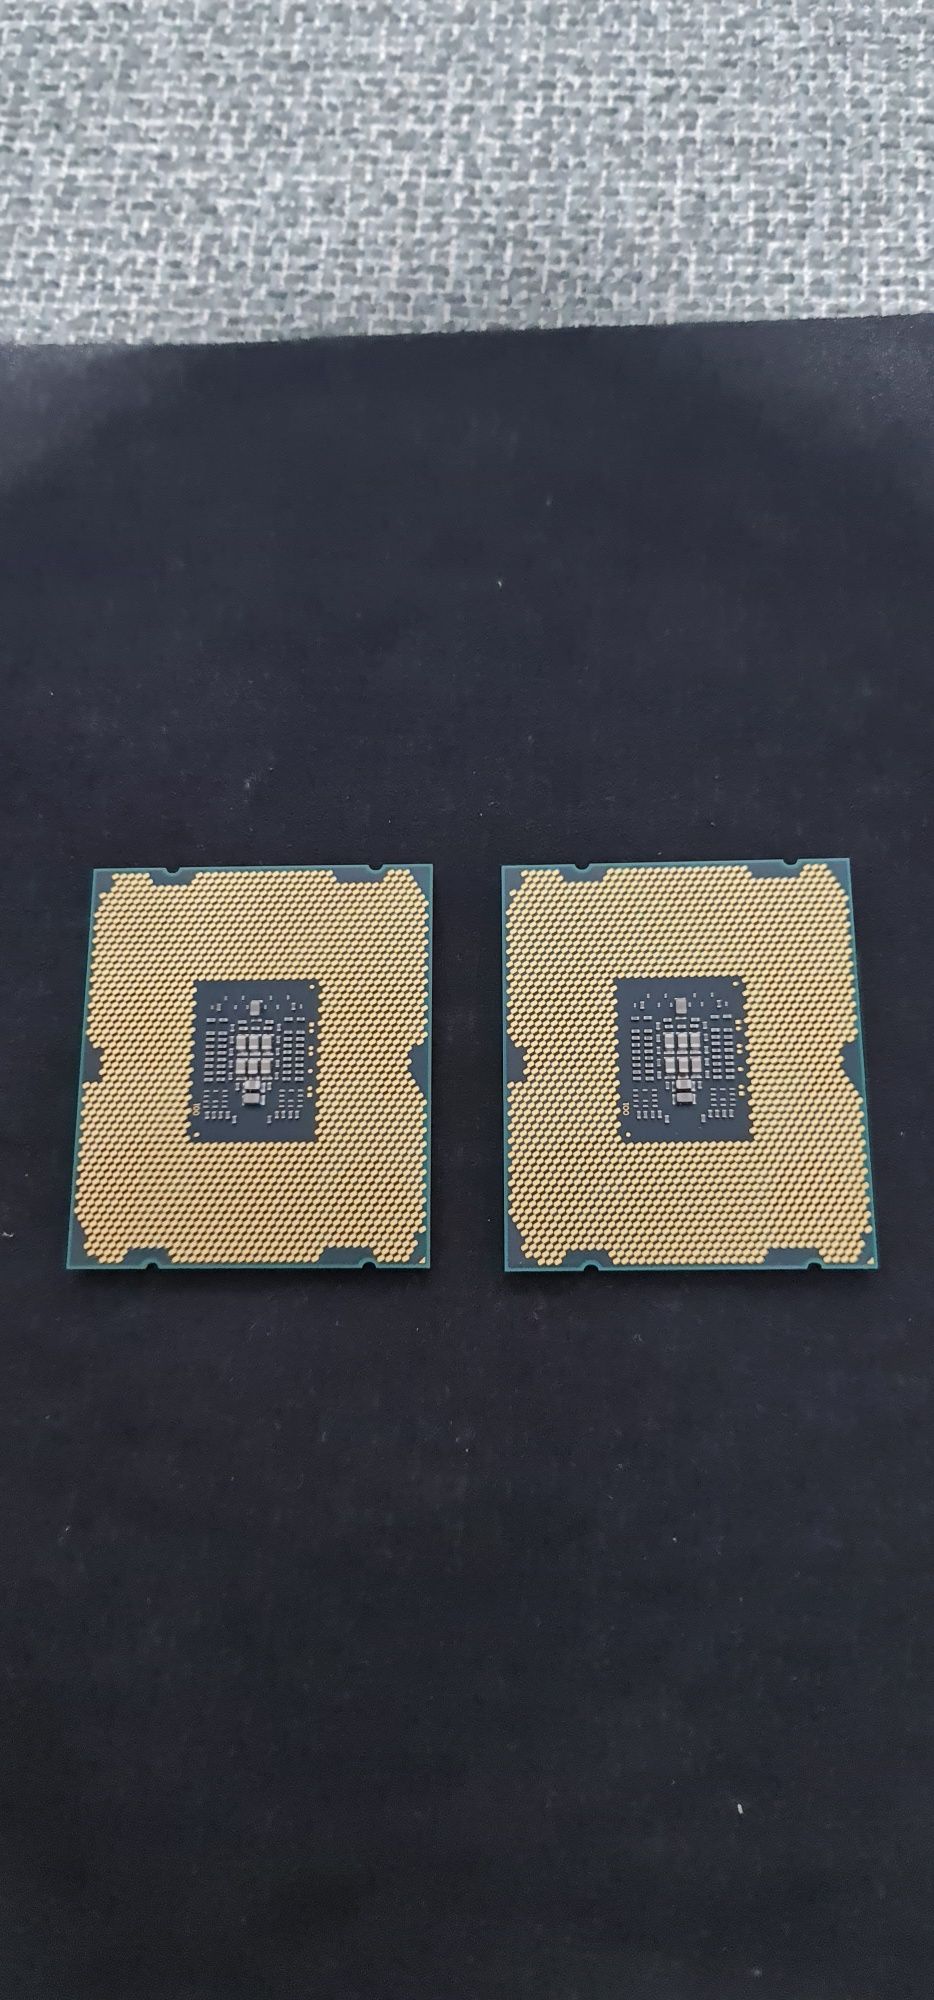 Procesor server Intel Xeon E5-2643 3.3 Ghz